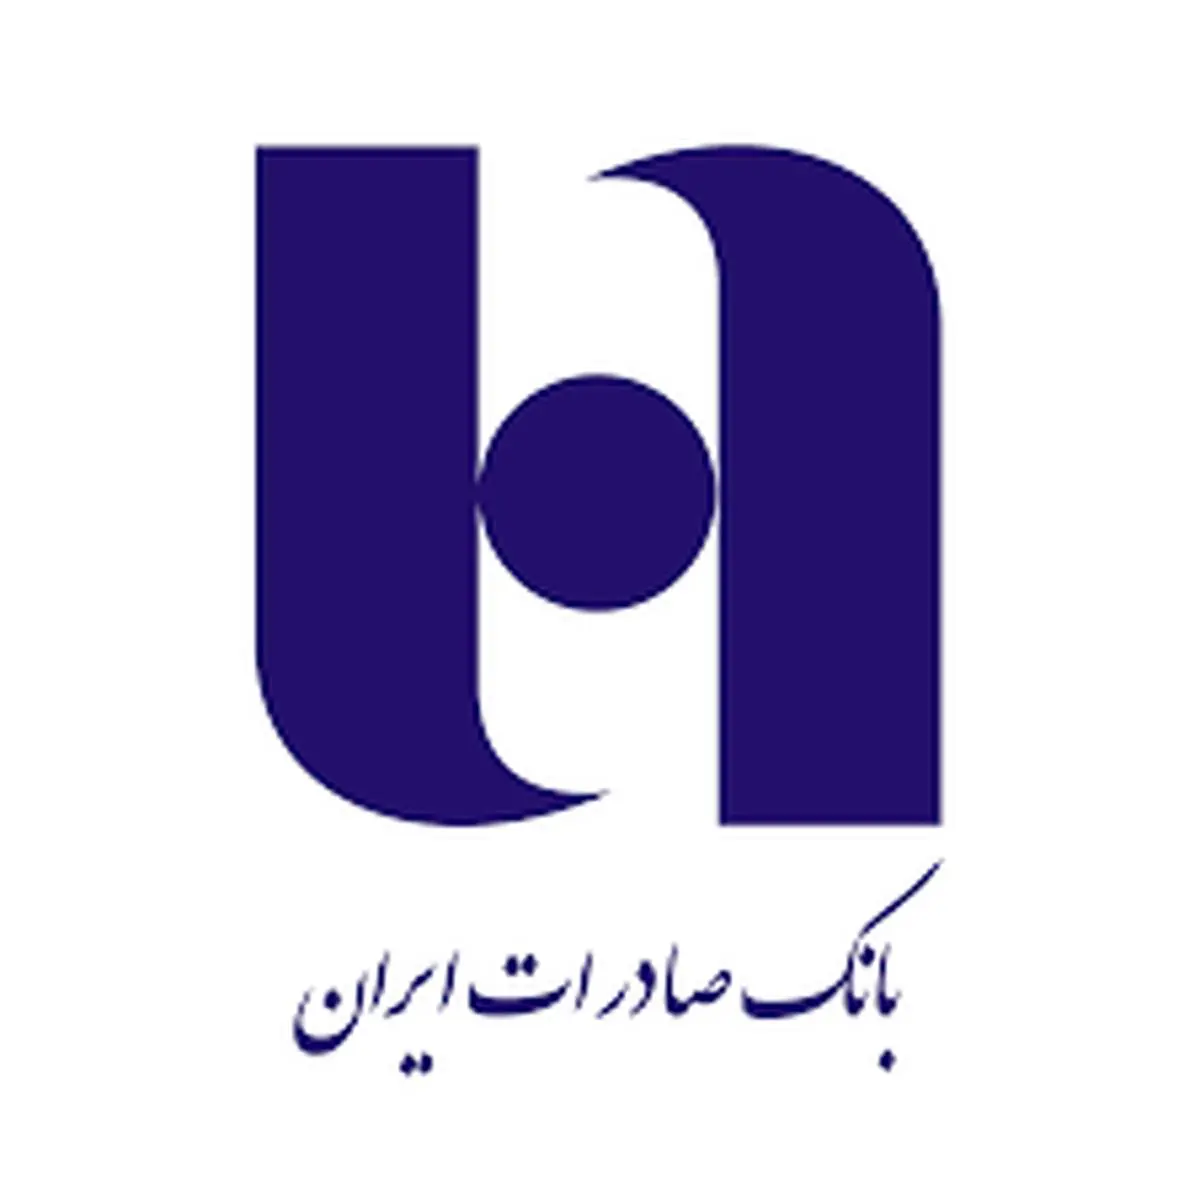 شروع احراز هویت الکترونیک در کارگزاری بانک صادرات ایران

